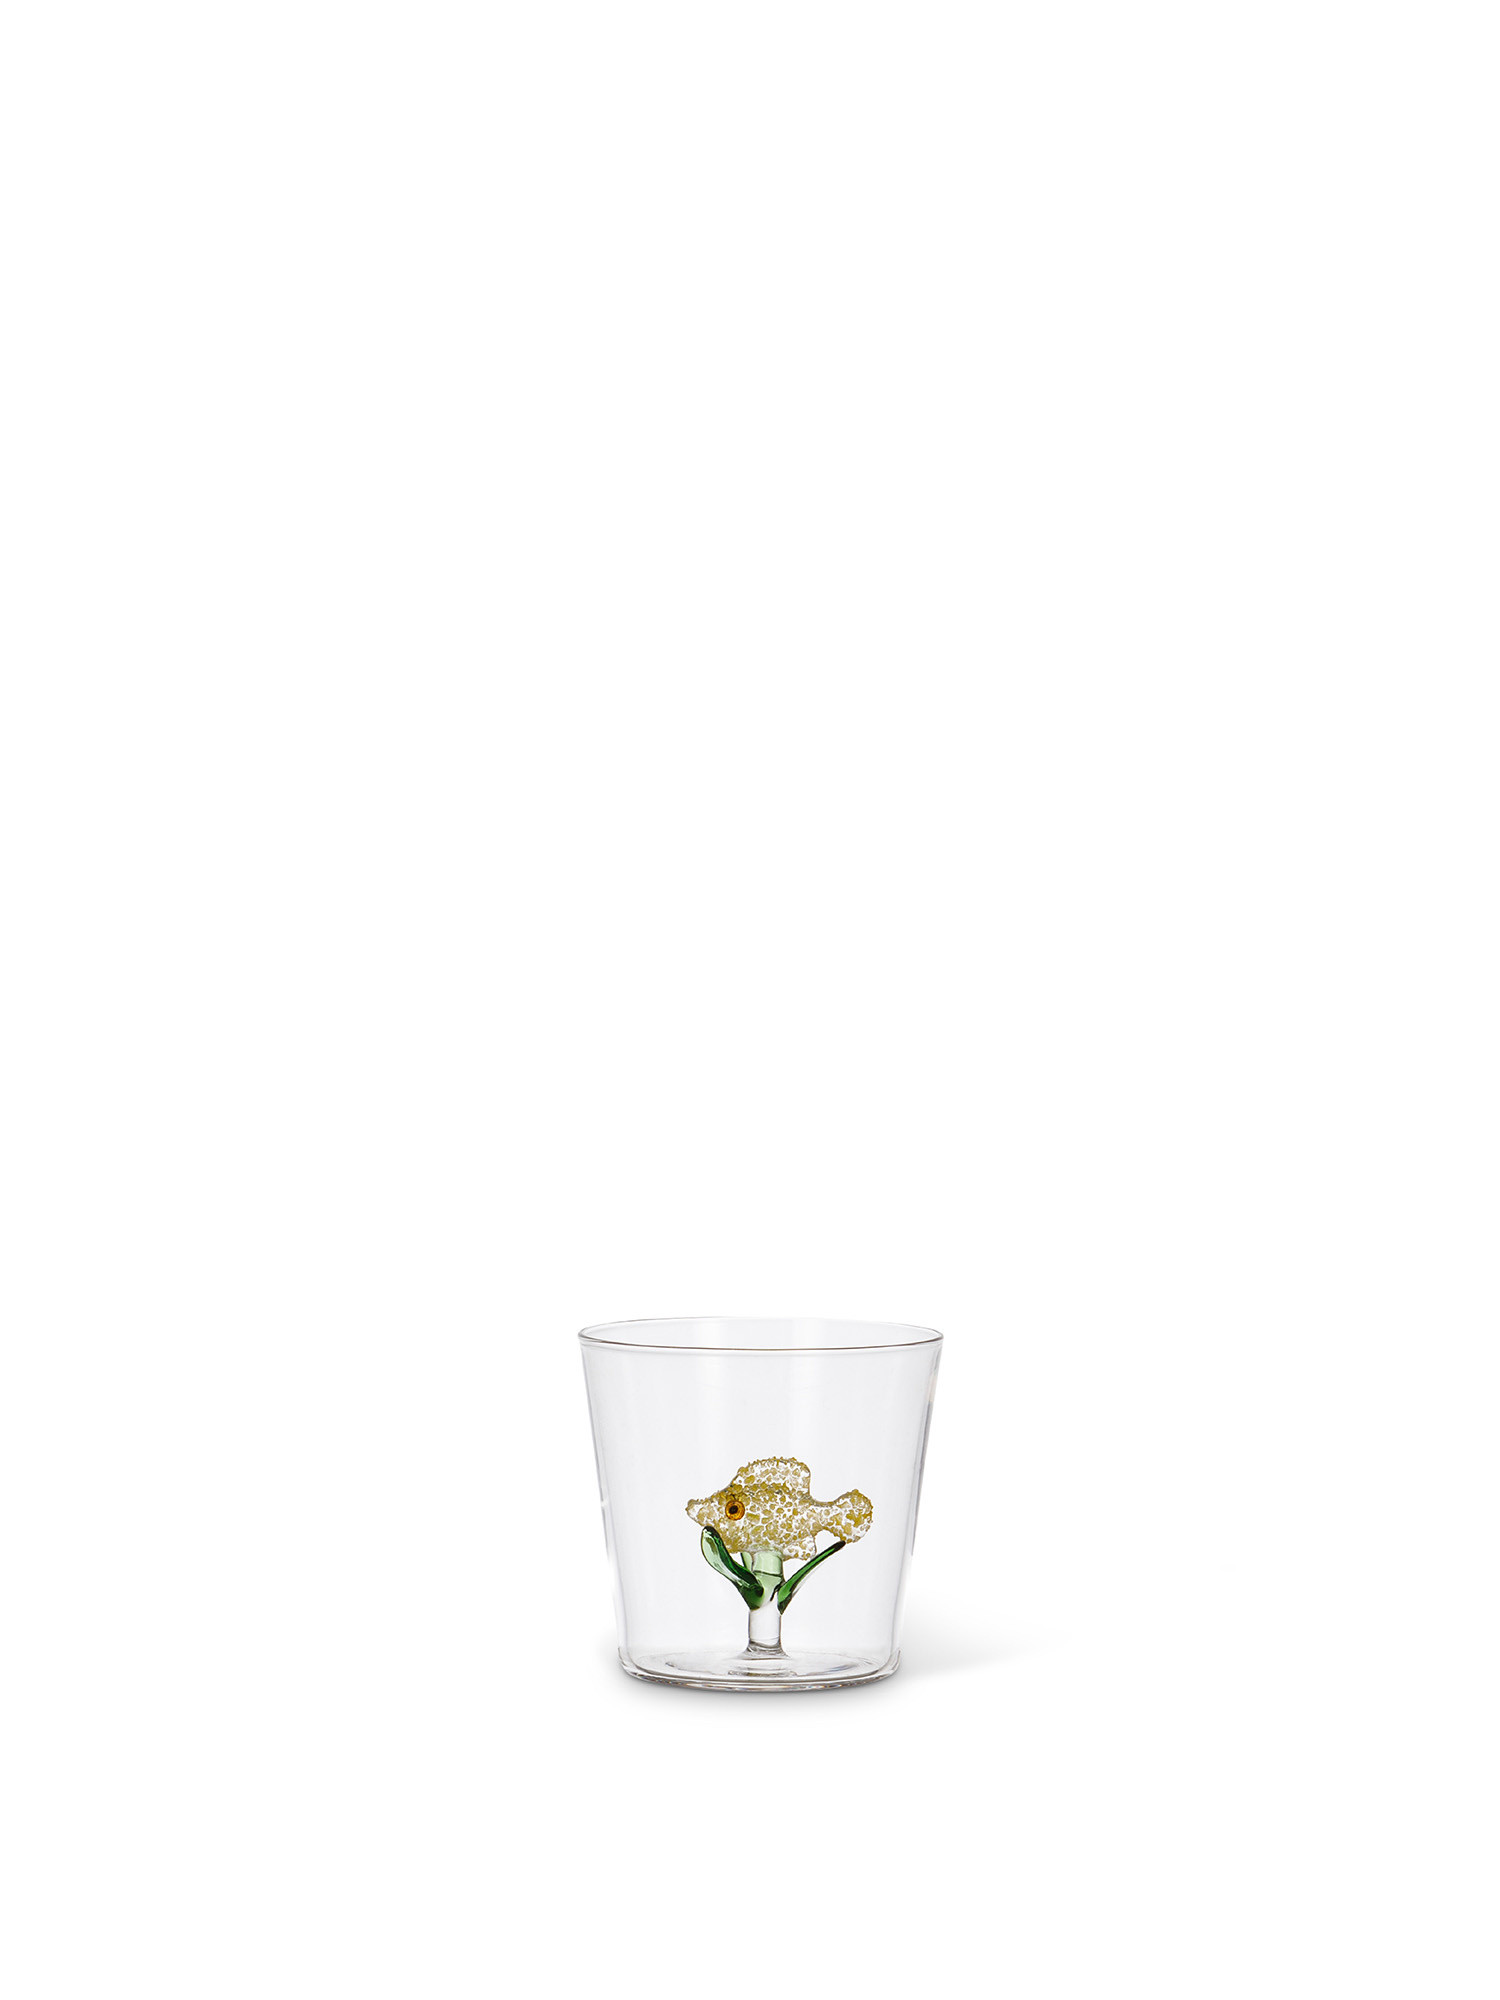 Bicchiere in vetro dettaglio pesce giallo, Trasparente, large image number 0